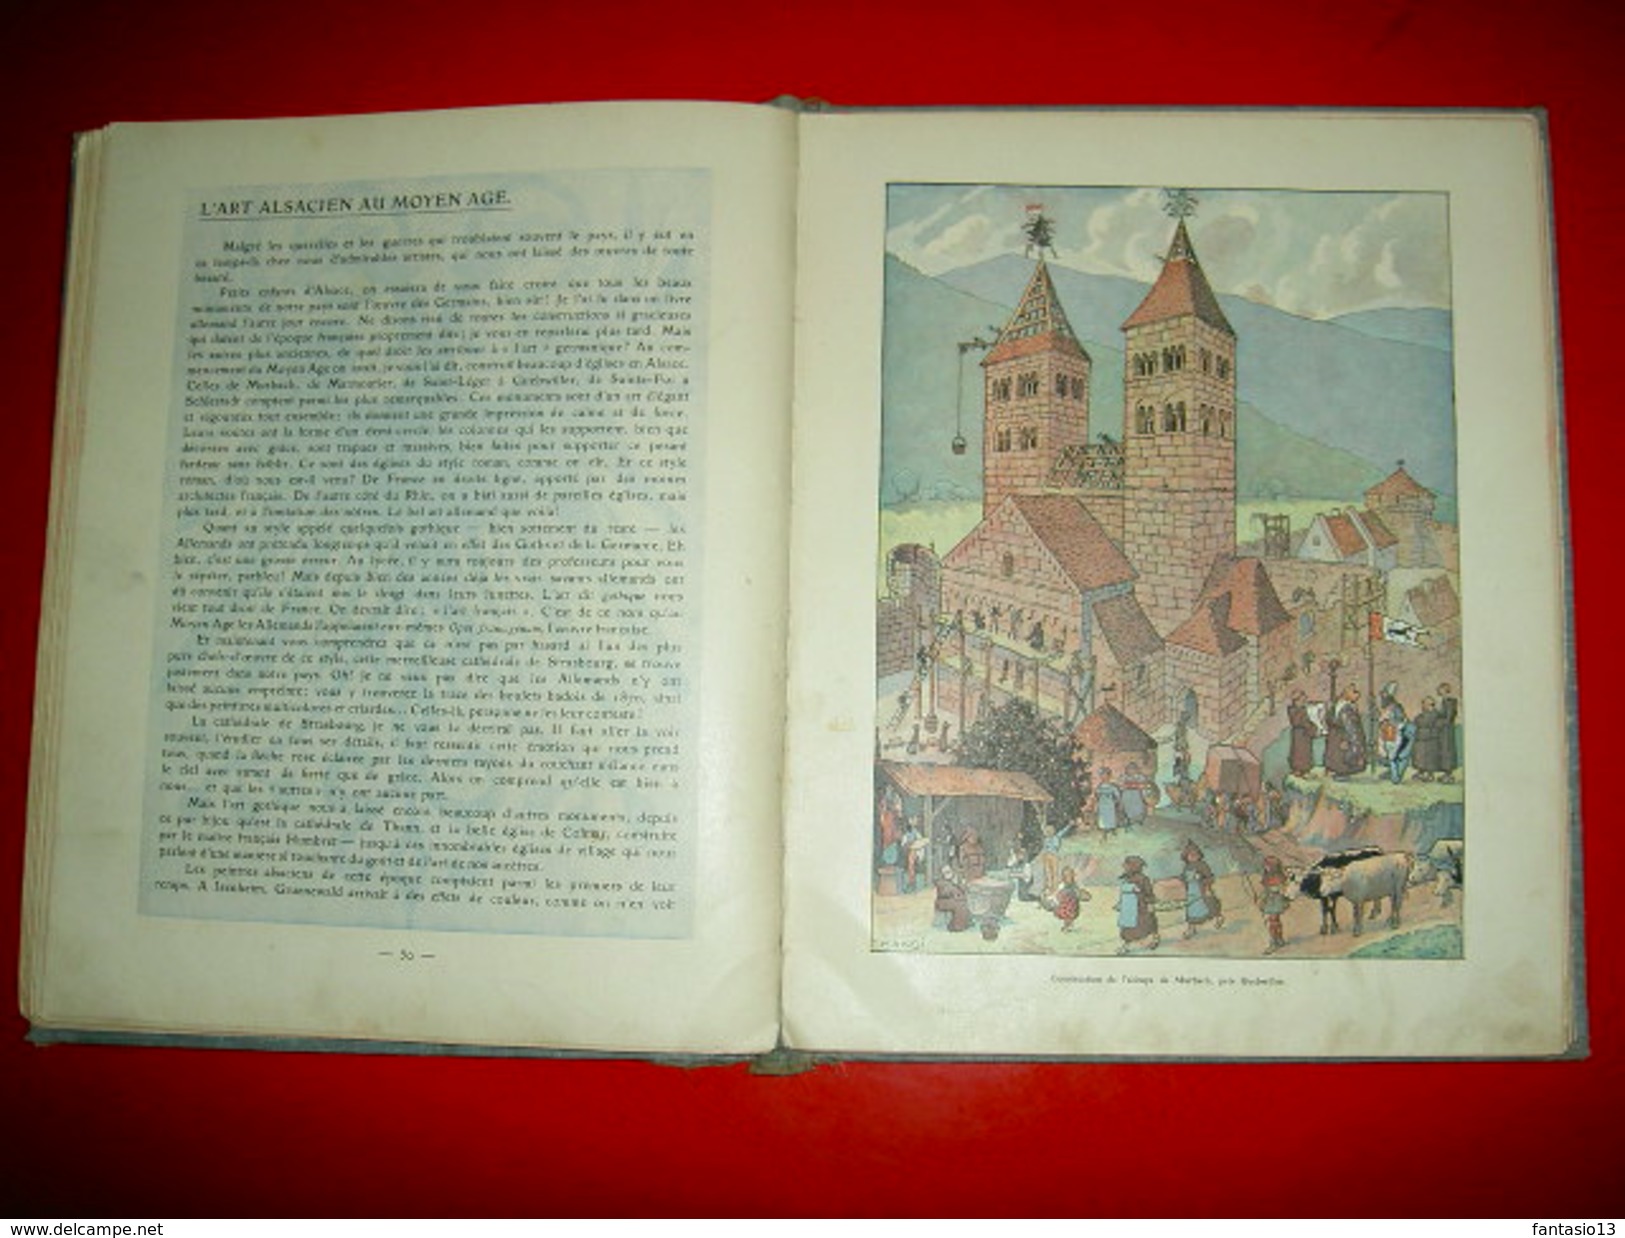 L' Histoire d' Alsace racontée aux petits enfants  par l' Oncle Hansi .Illustré par Hansi et Huen  1912 Ed. Floury